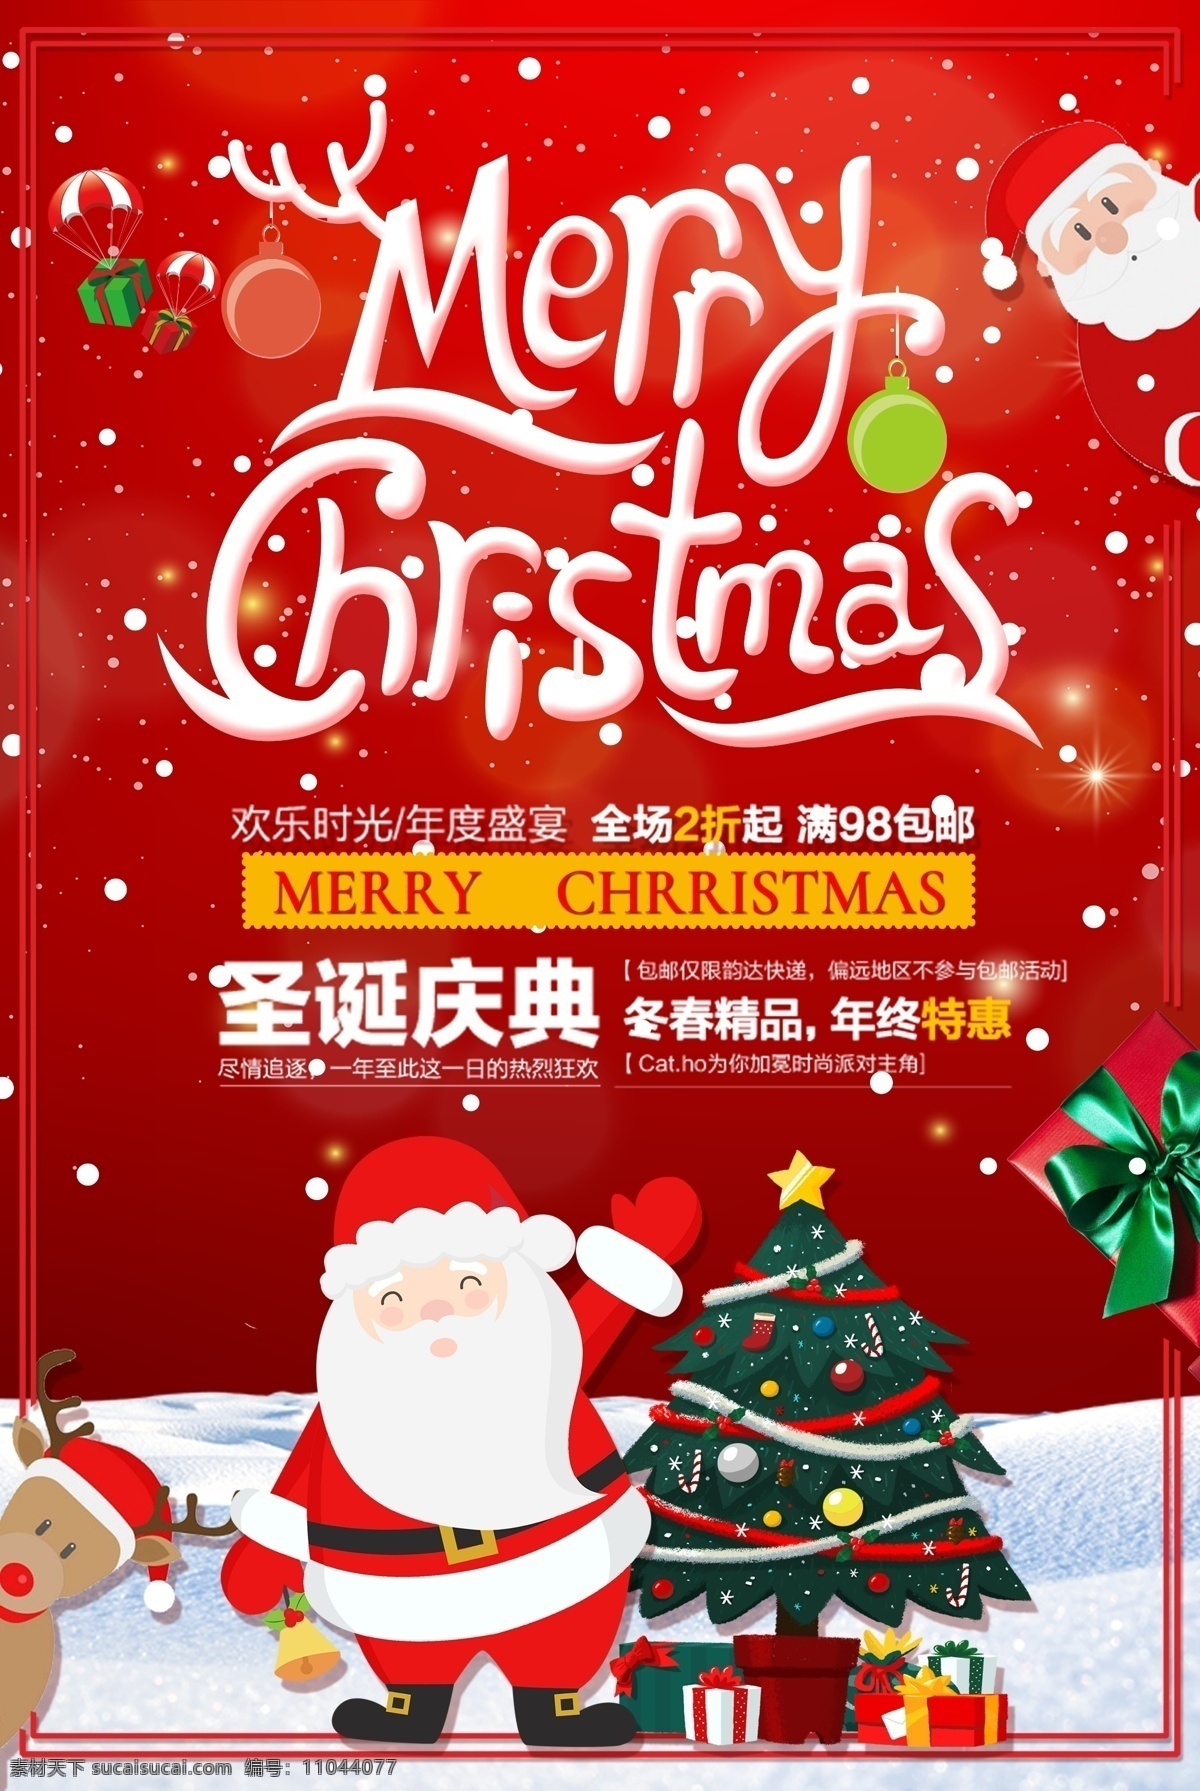 红色 简约 创意 圣诞节 圣诞快乐 促销 宣传海报 圣诞海报 冬天 圣诞树 圣诞老人 节日海报 庆典